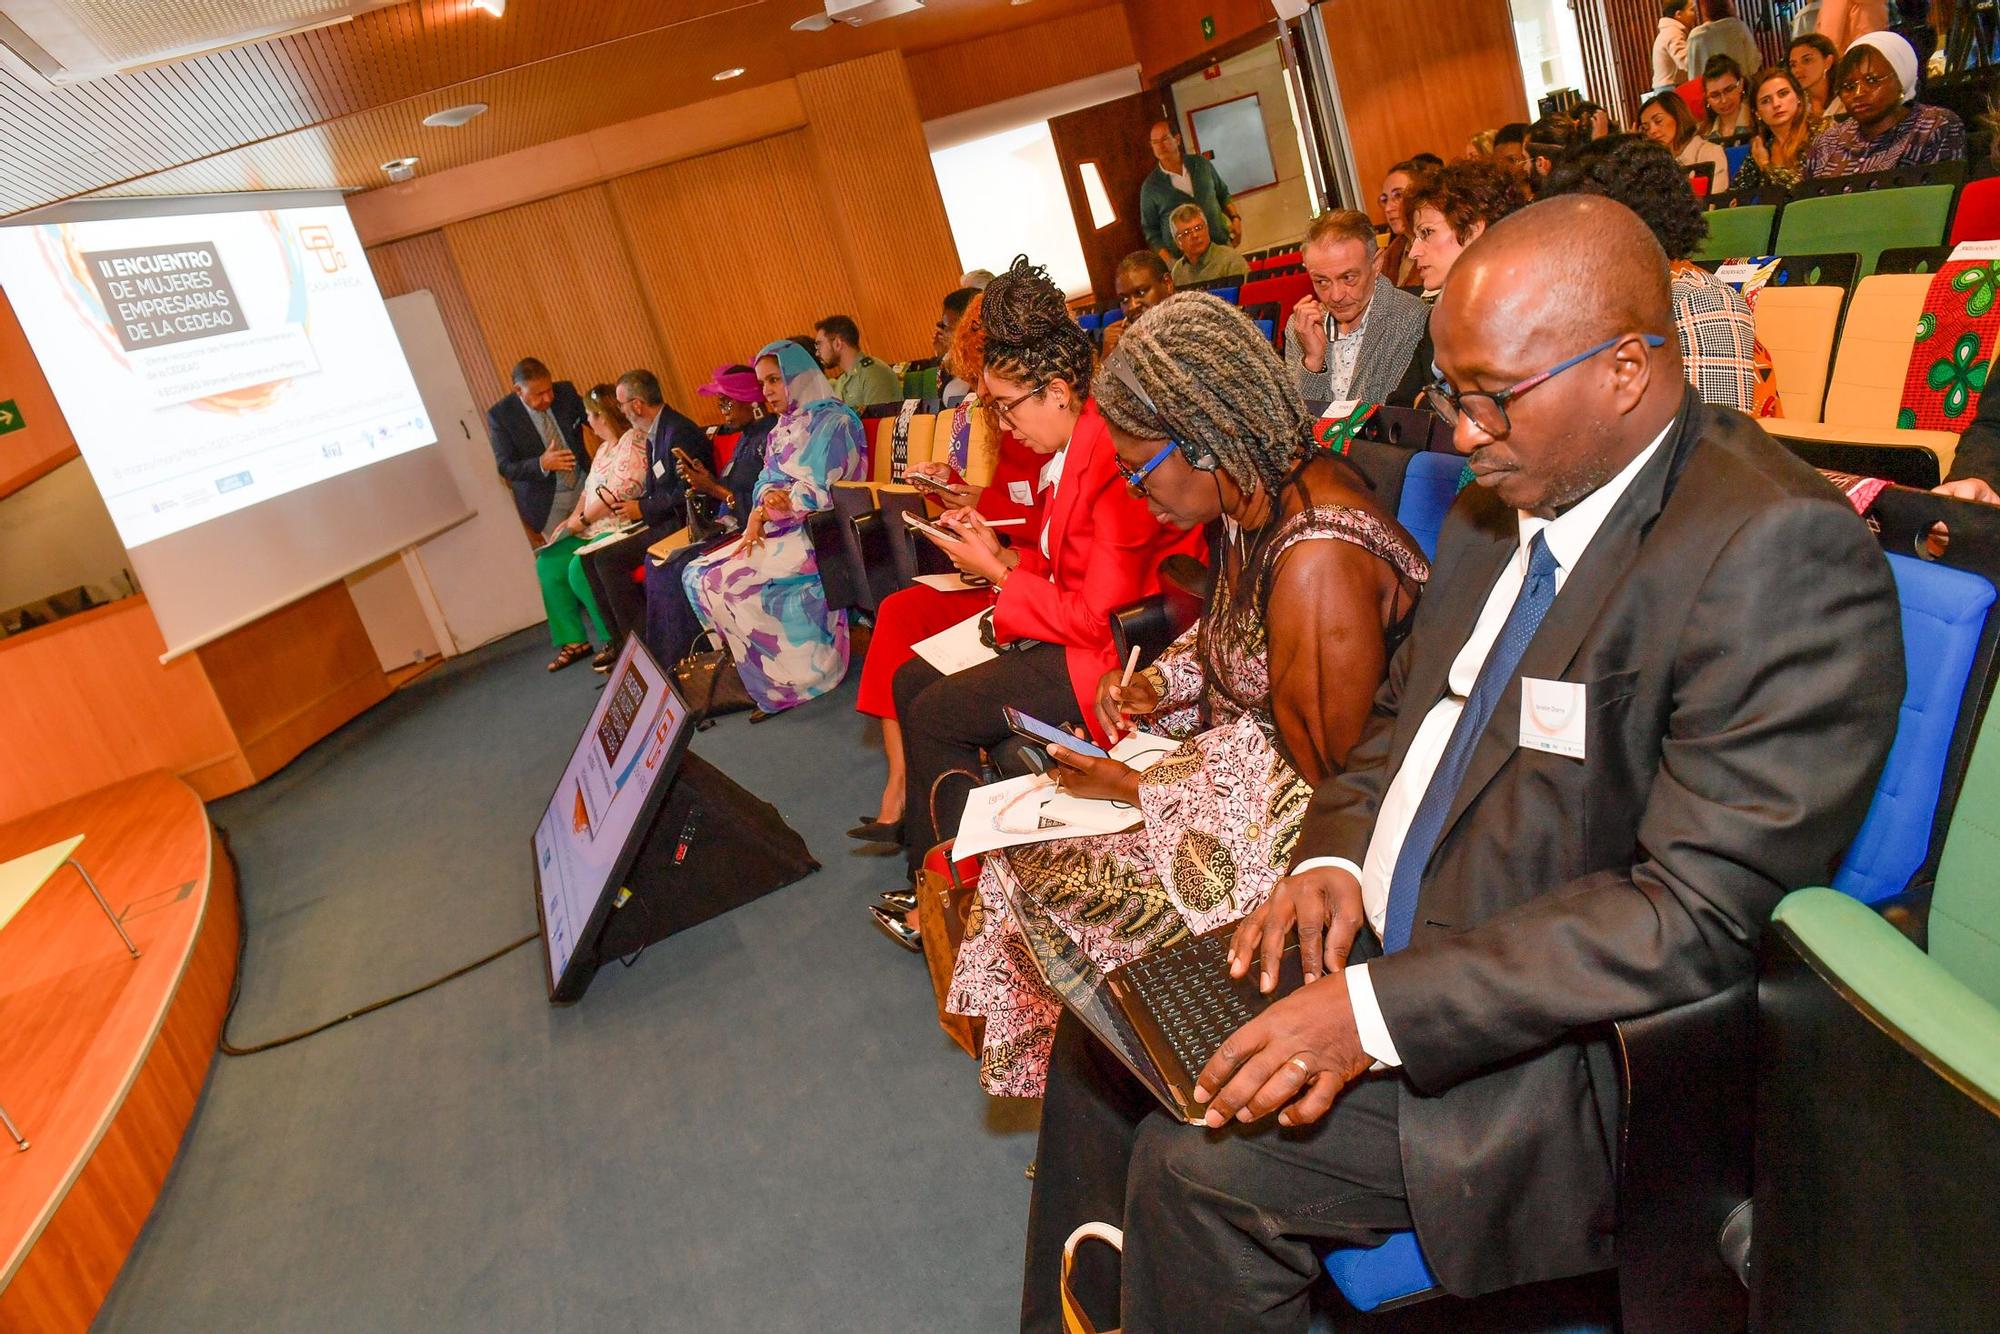 II Encuentro de Mujeres Empresarias de la Comunidad Económica de Estados de África Occidental